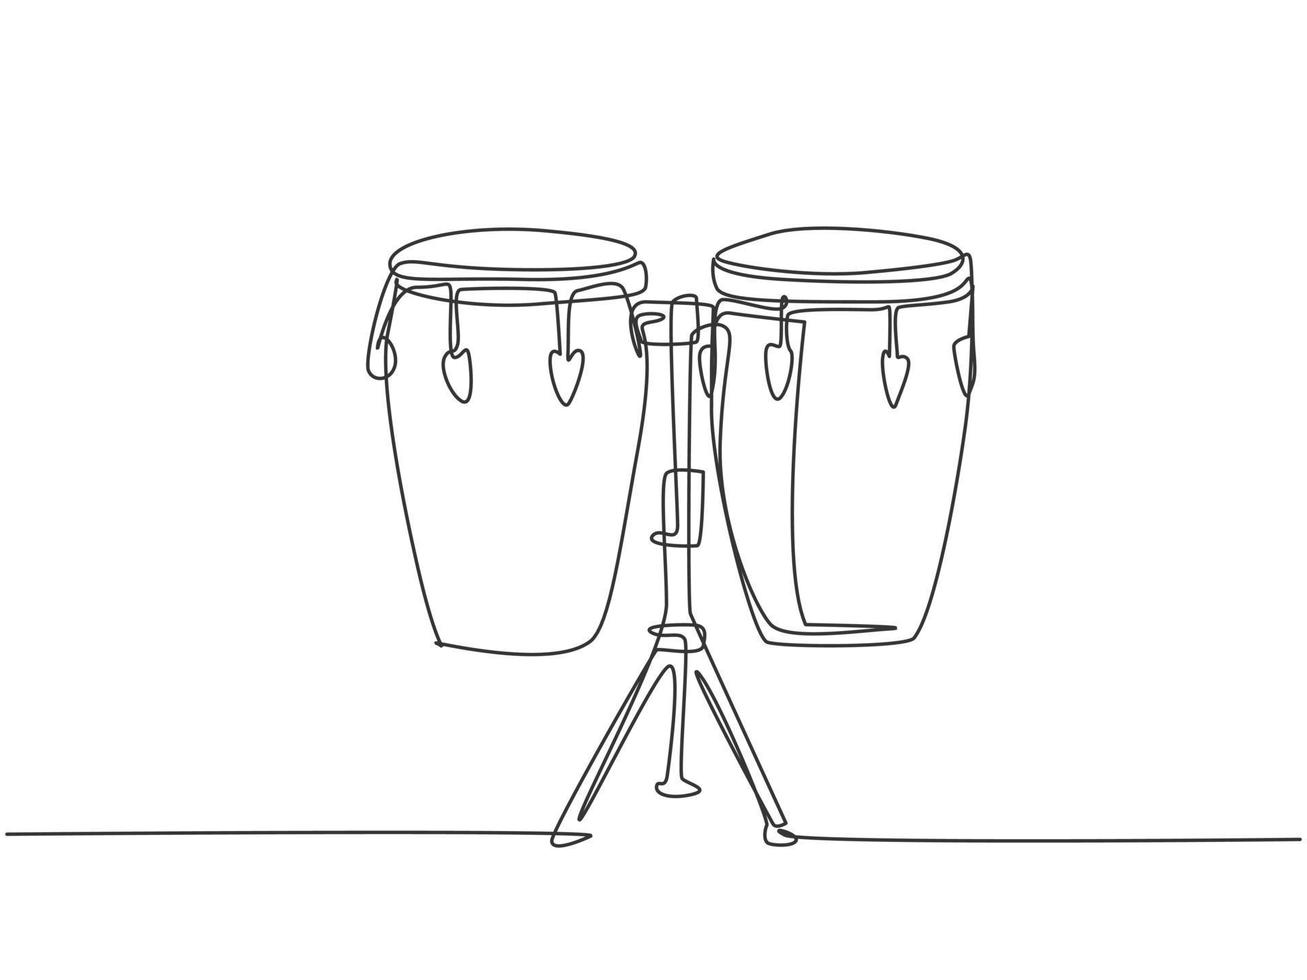 un dibujo de línea continua del tambor étnico africano tradicional, bongo.  concepto de instrumentos musicales de percusión. Ilustración de vector de  diseño gráfico de dibujo de línea única dinámica 3593496 Vector en